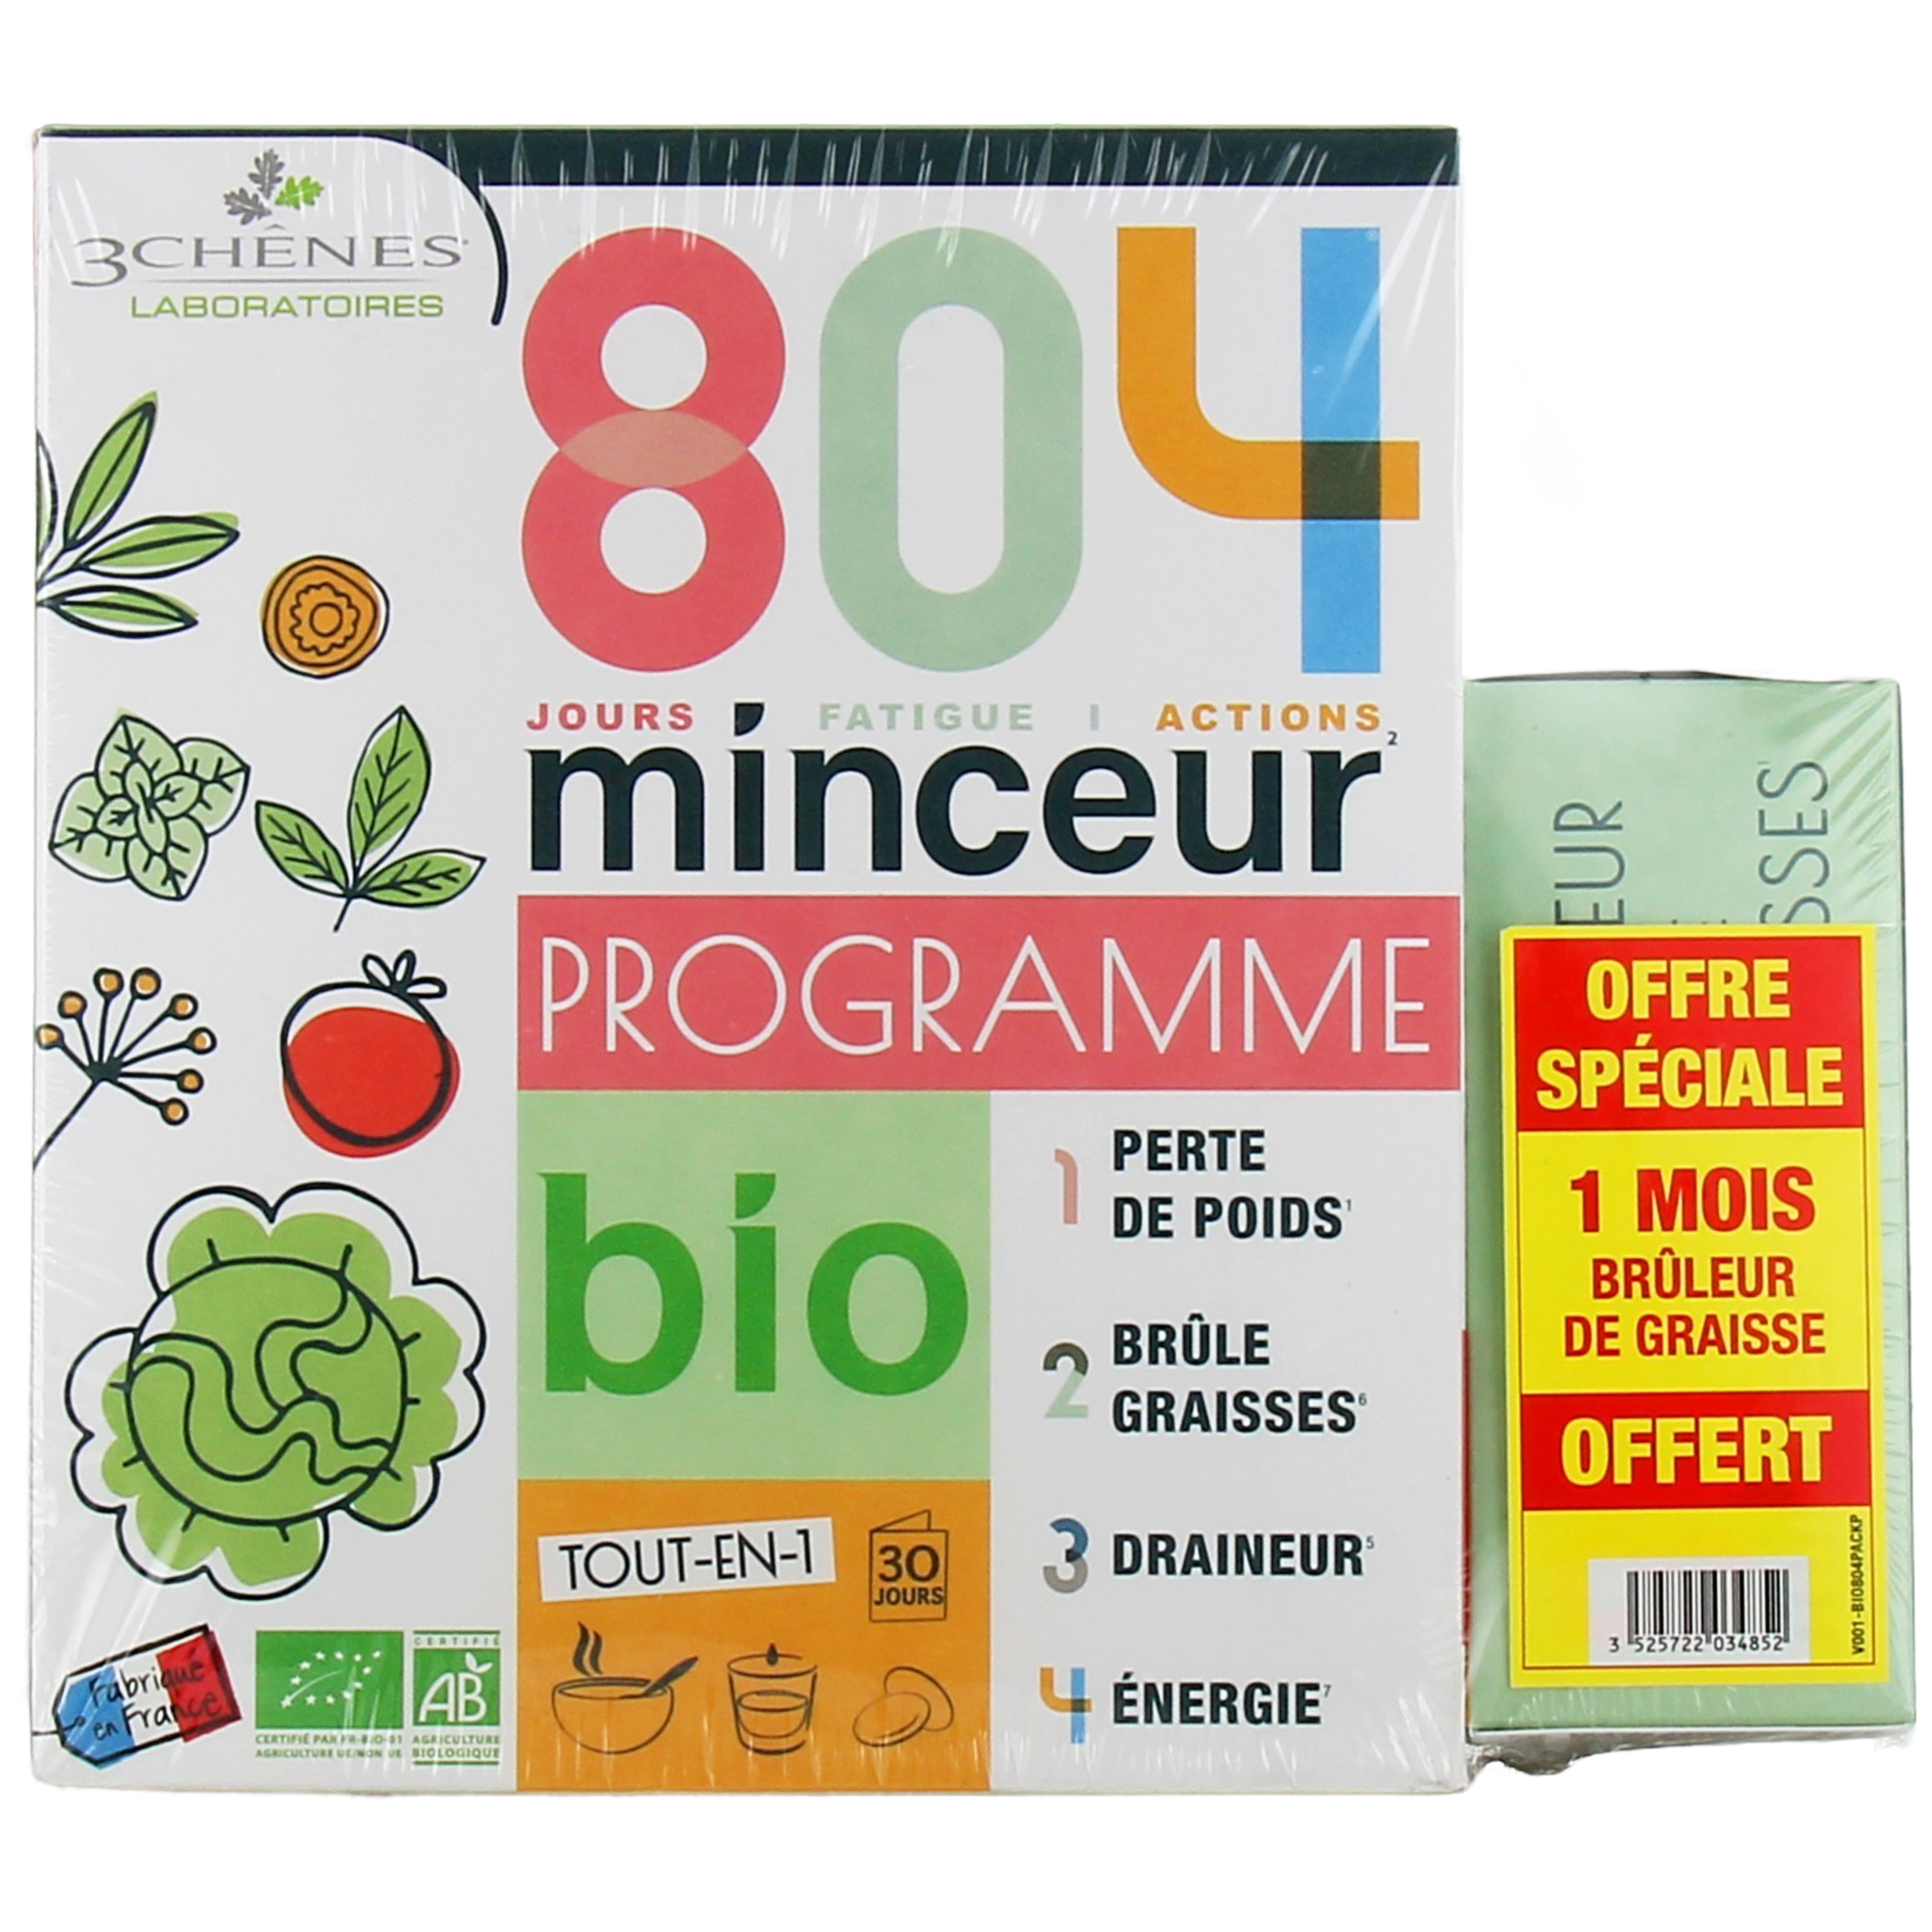 804 Programme Minceur Bio